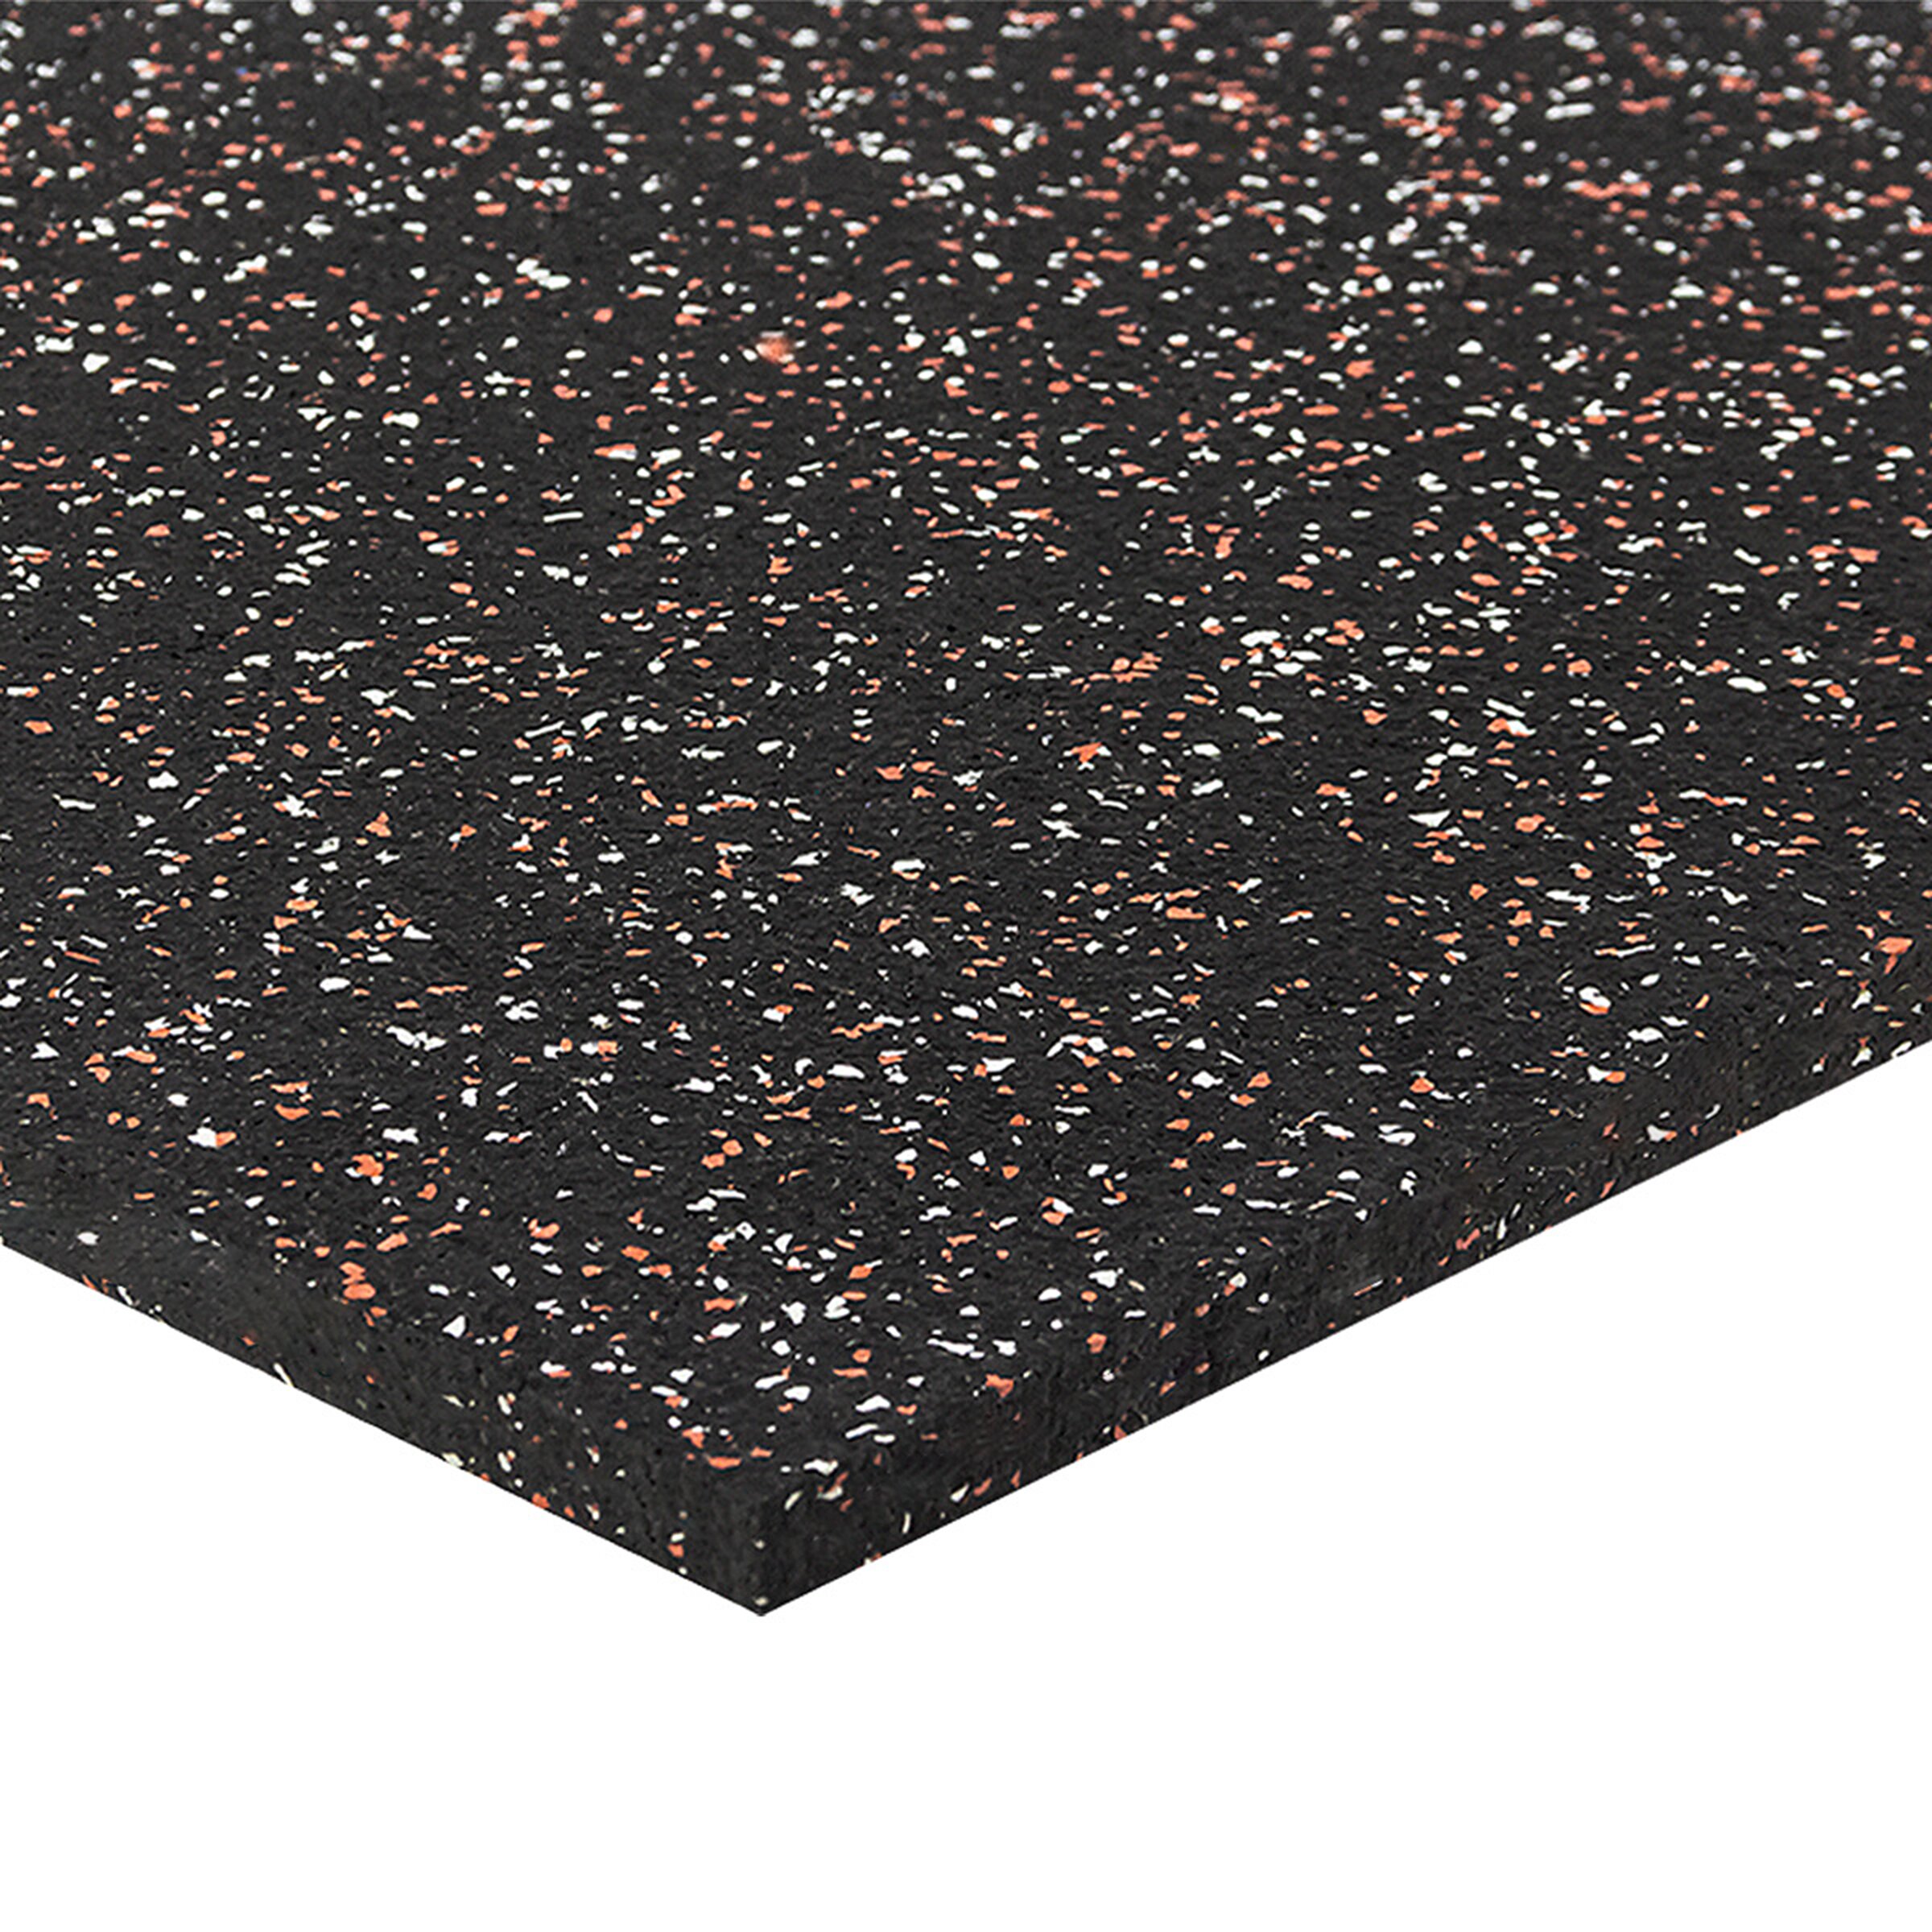 Čierno-bielo-červená podlahová guma (puzzle - okraj) FLOMA FitFlo SF1050 - dĺžka 50 cm, šírka 50 cm, výška 1,6 cm